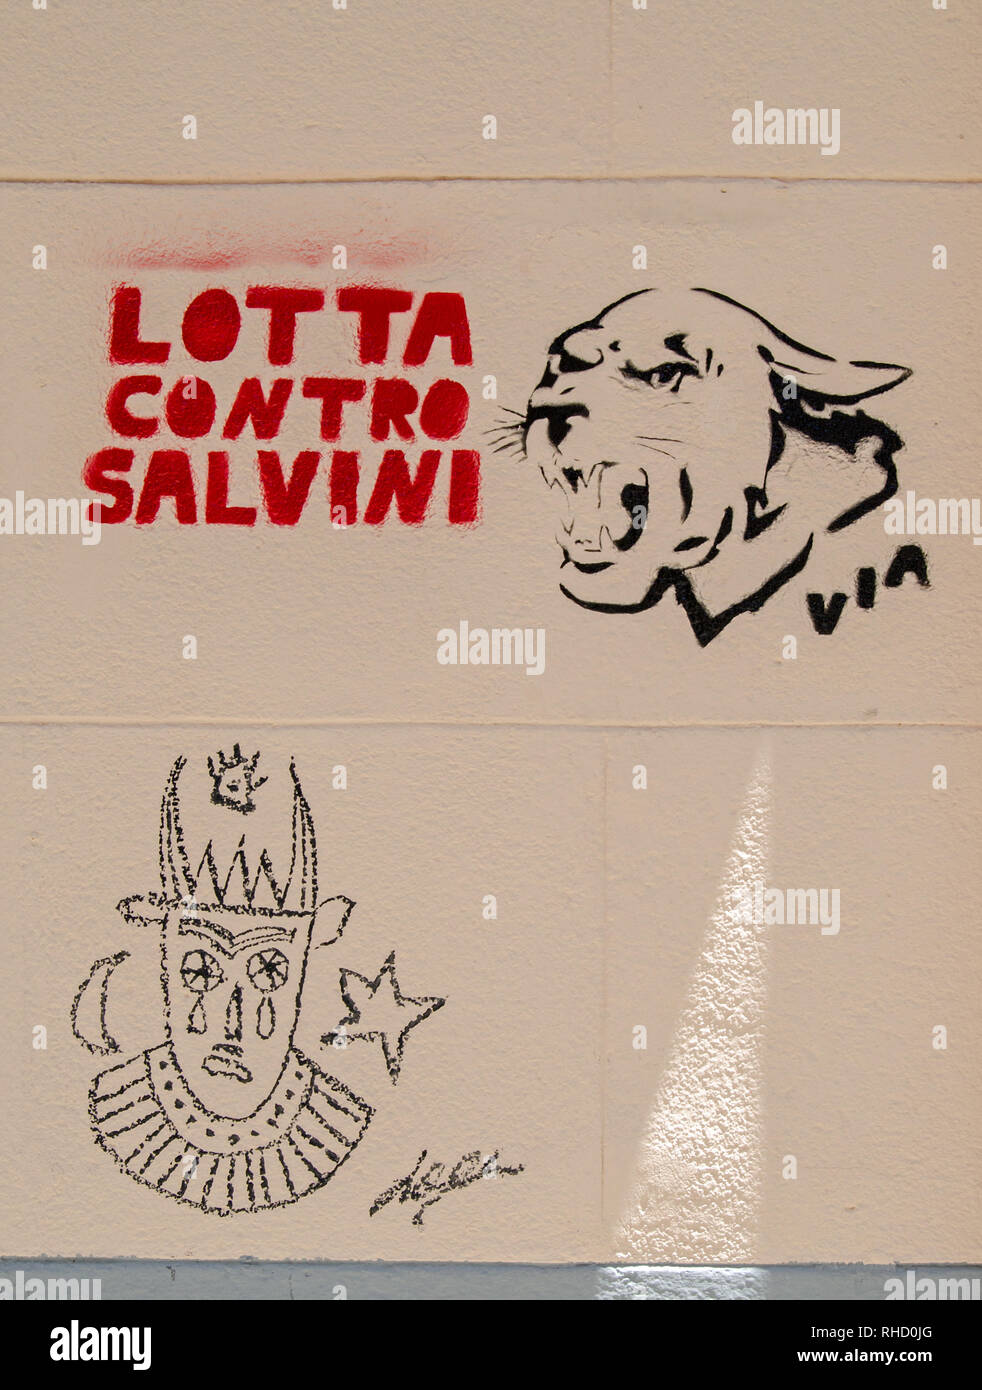 PALERMO, Italia - 16 giugno 2018: Graffiti su un muro a Palermo contro il Vice Primo Ministro dell'Italia - Mateo Salvini. Il leader del Nord L Foto Stock